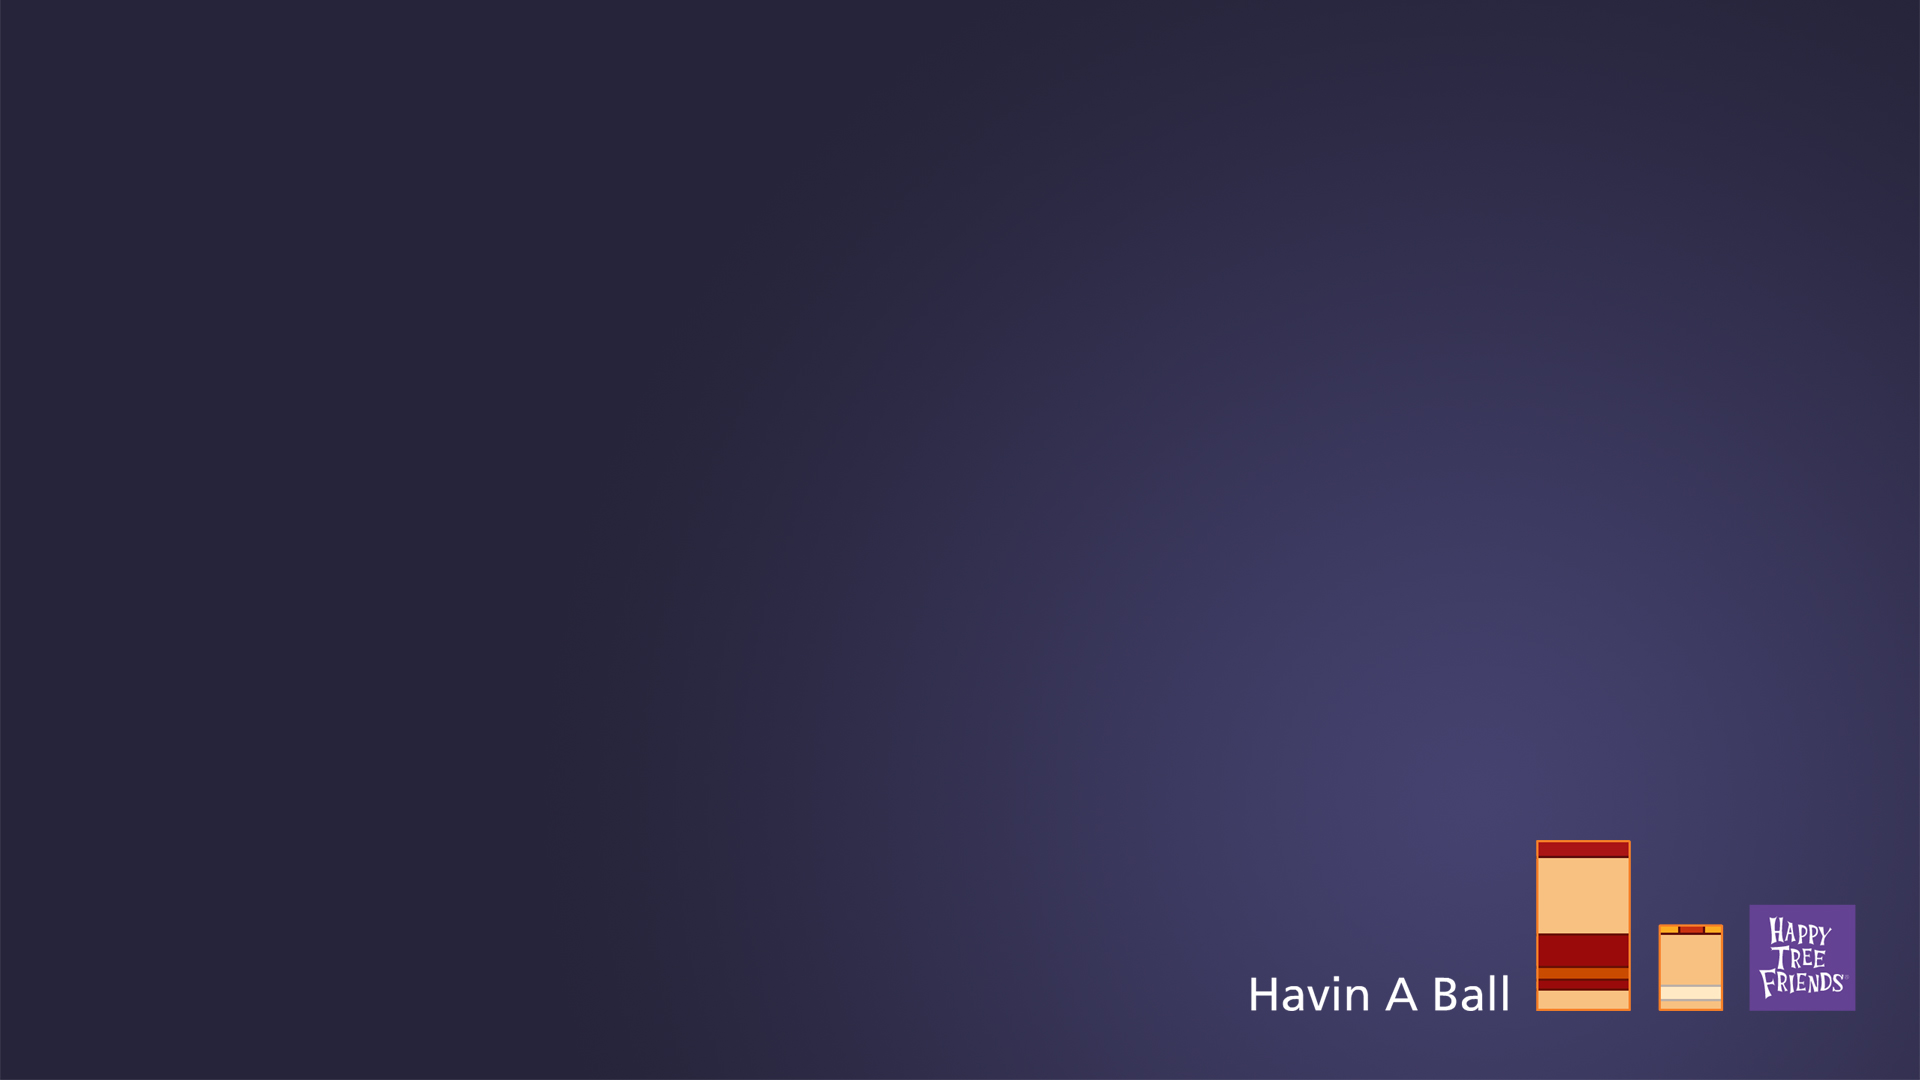 Havin A Ball Minimalist Wallpaper - Minimalist Wallpaper Friends , HD Wallpaper & Backgrounds